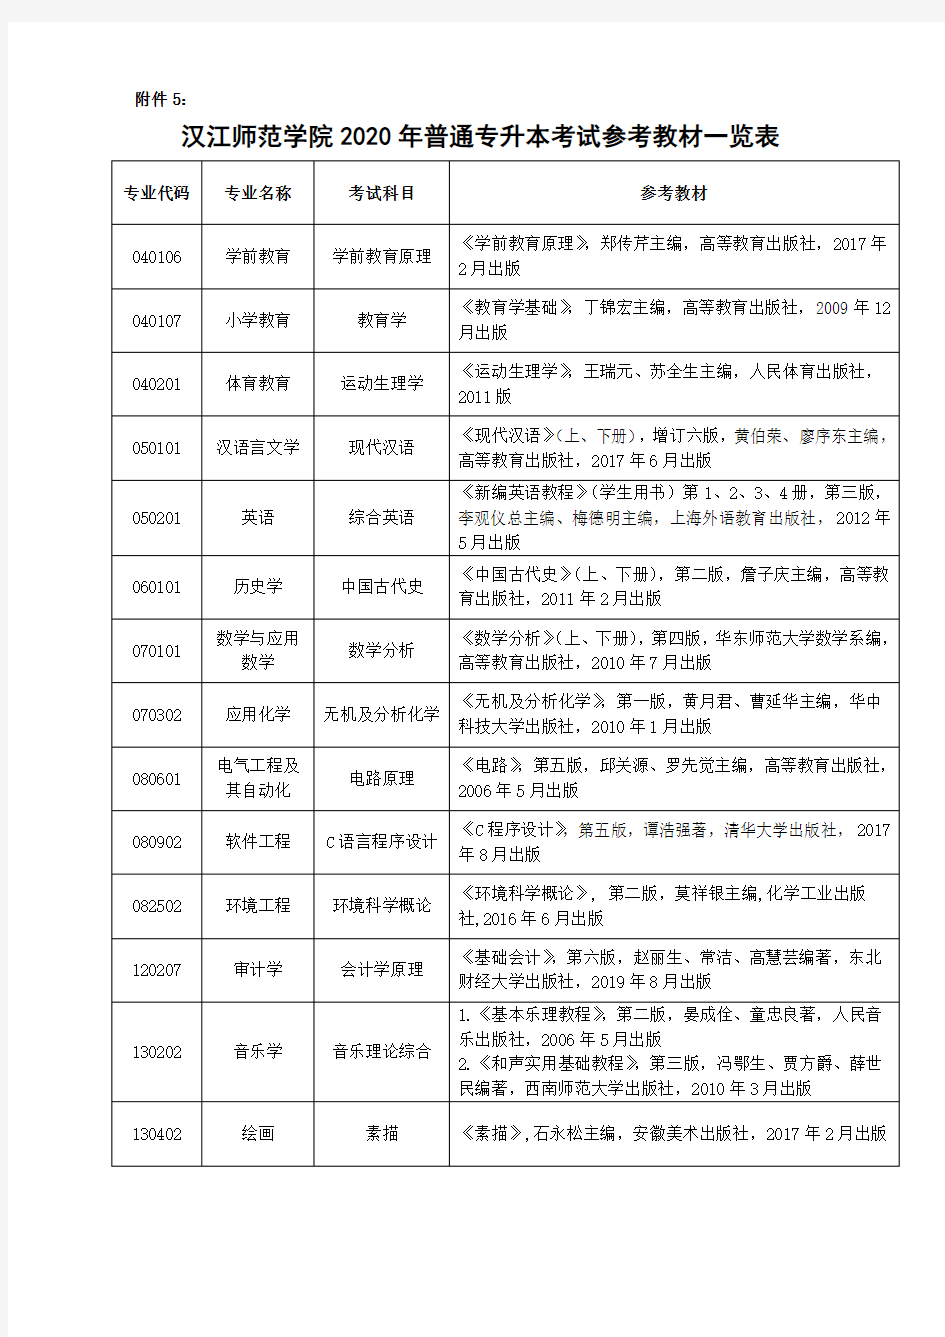 汉江师范学院2020年普通专升本考试参考教材一览表